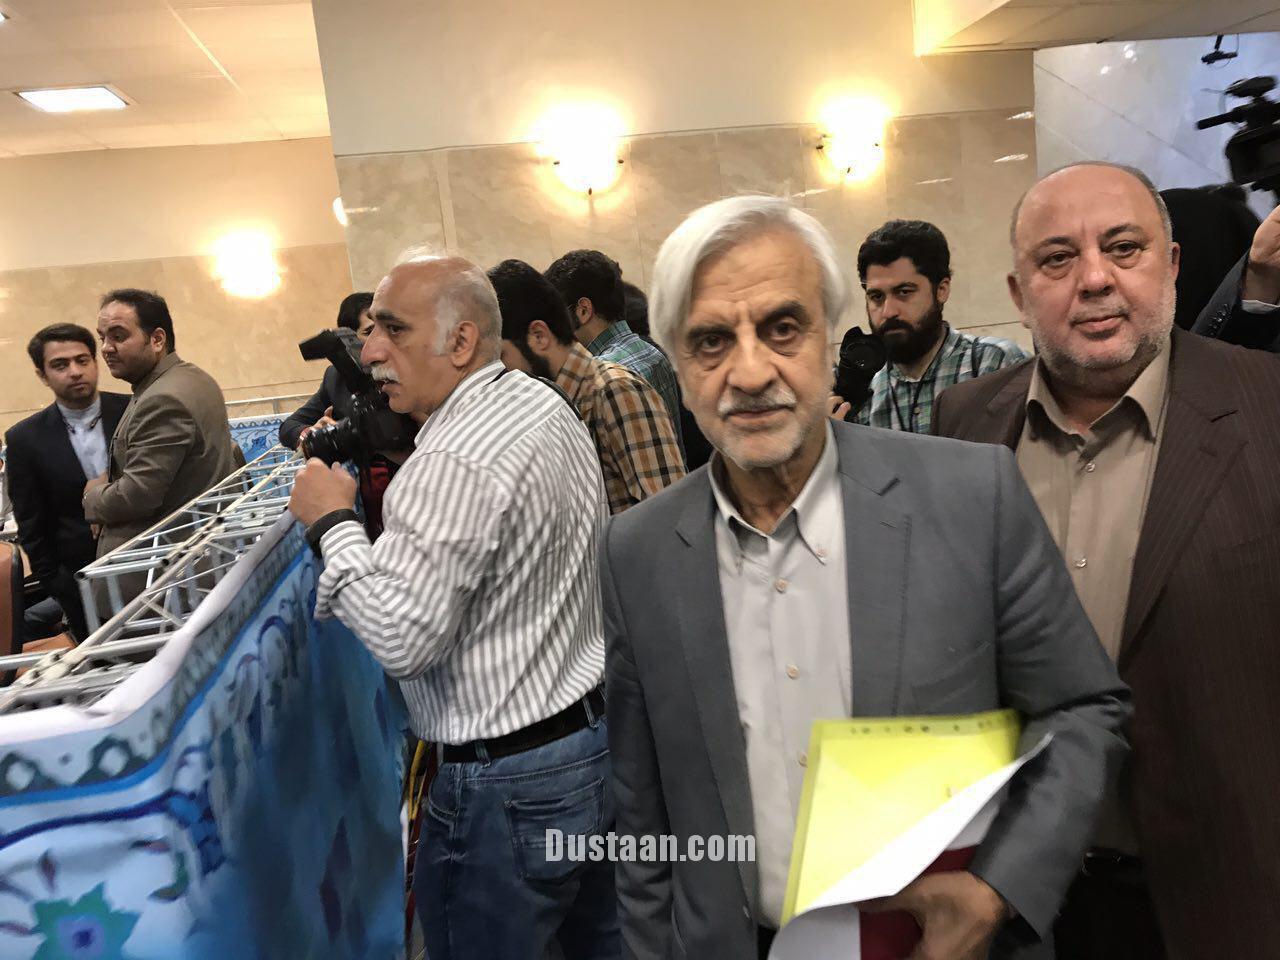 ثبت نام هاشمی طبا در انتخابات/عکس